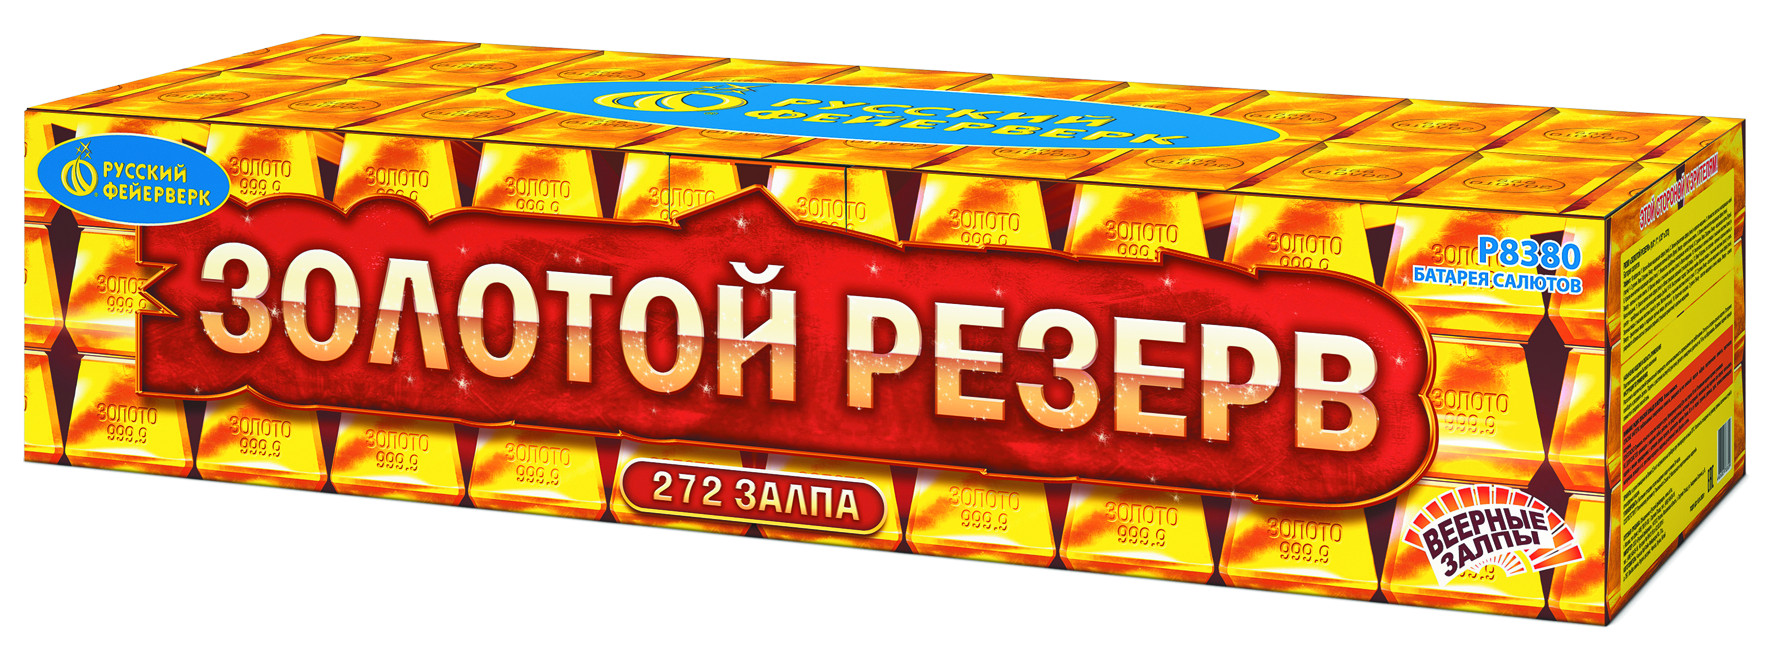 Батарея салютов Русский Фейерверк Золотой резерв Р8380 272 залпов